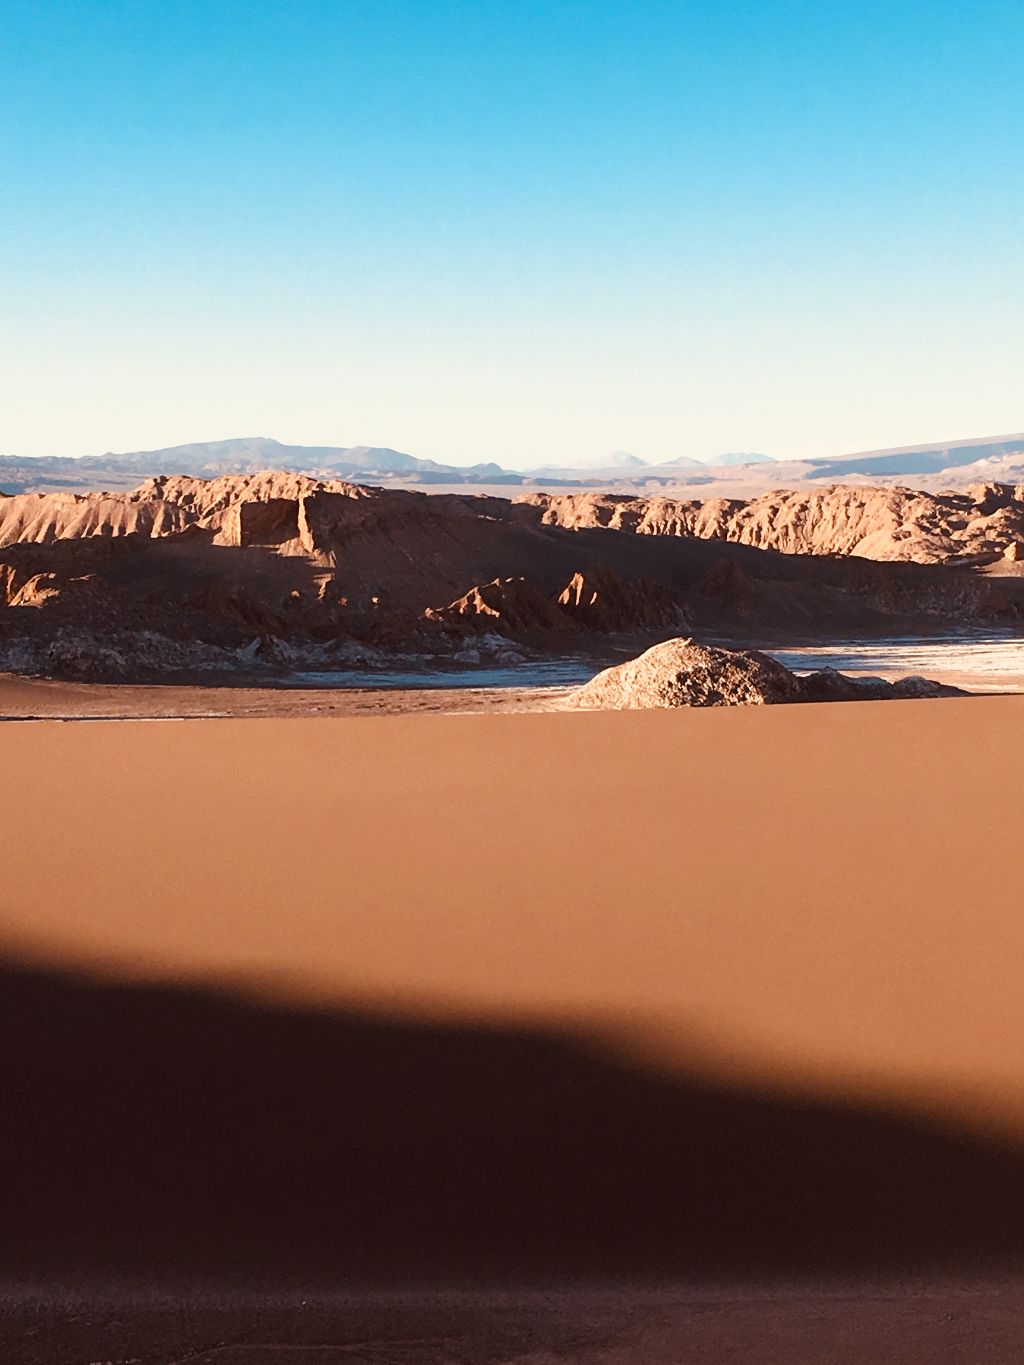 Atacama Desert in Chile, photo by Nikomachi Karakostanoglou.